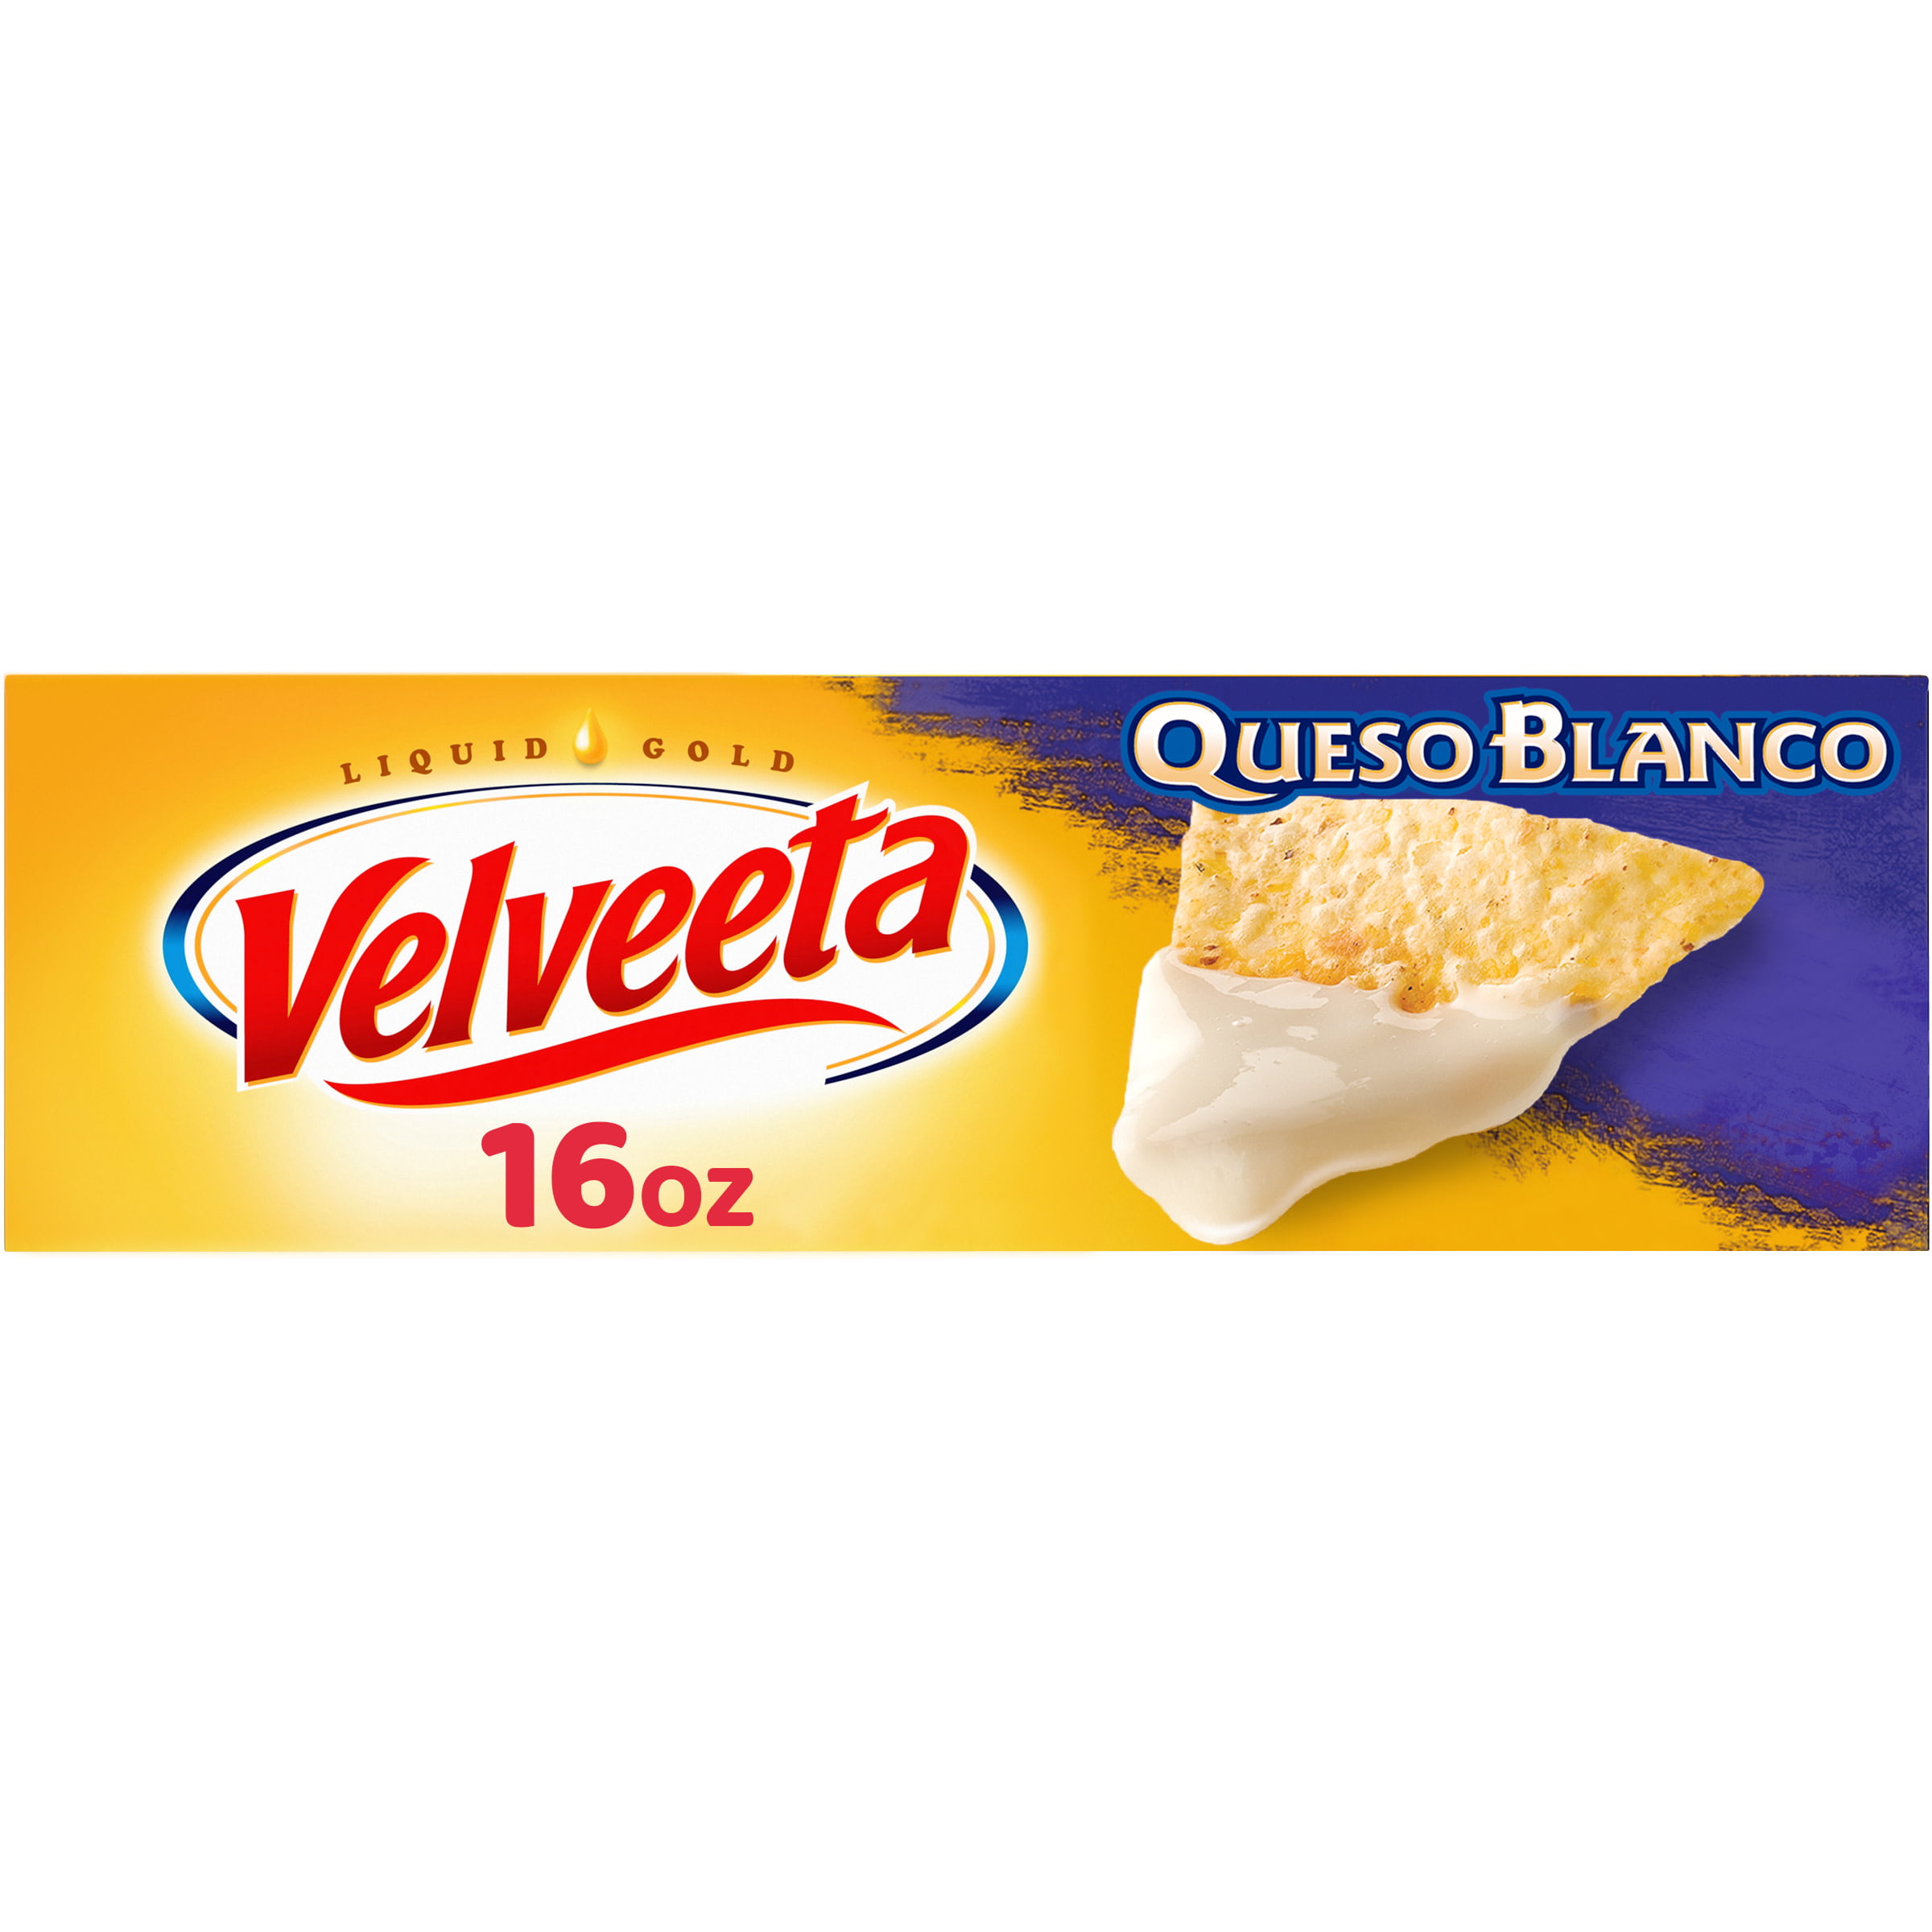 Velveeta Queso Blanco Melting Cheese, 16 oz Block - Walmart.com